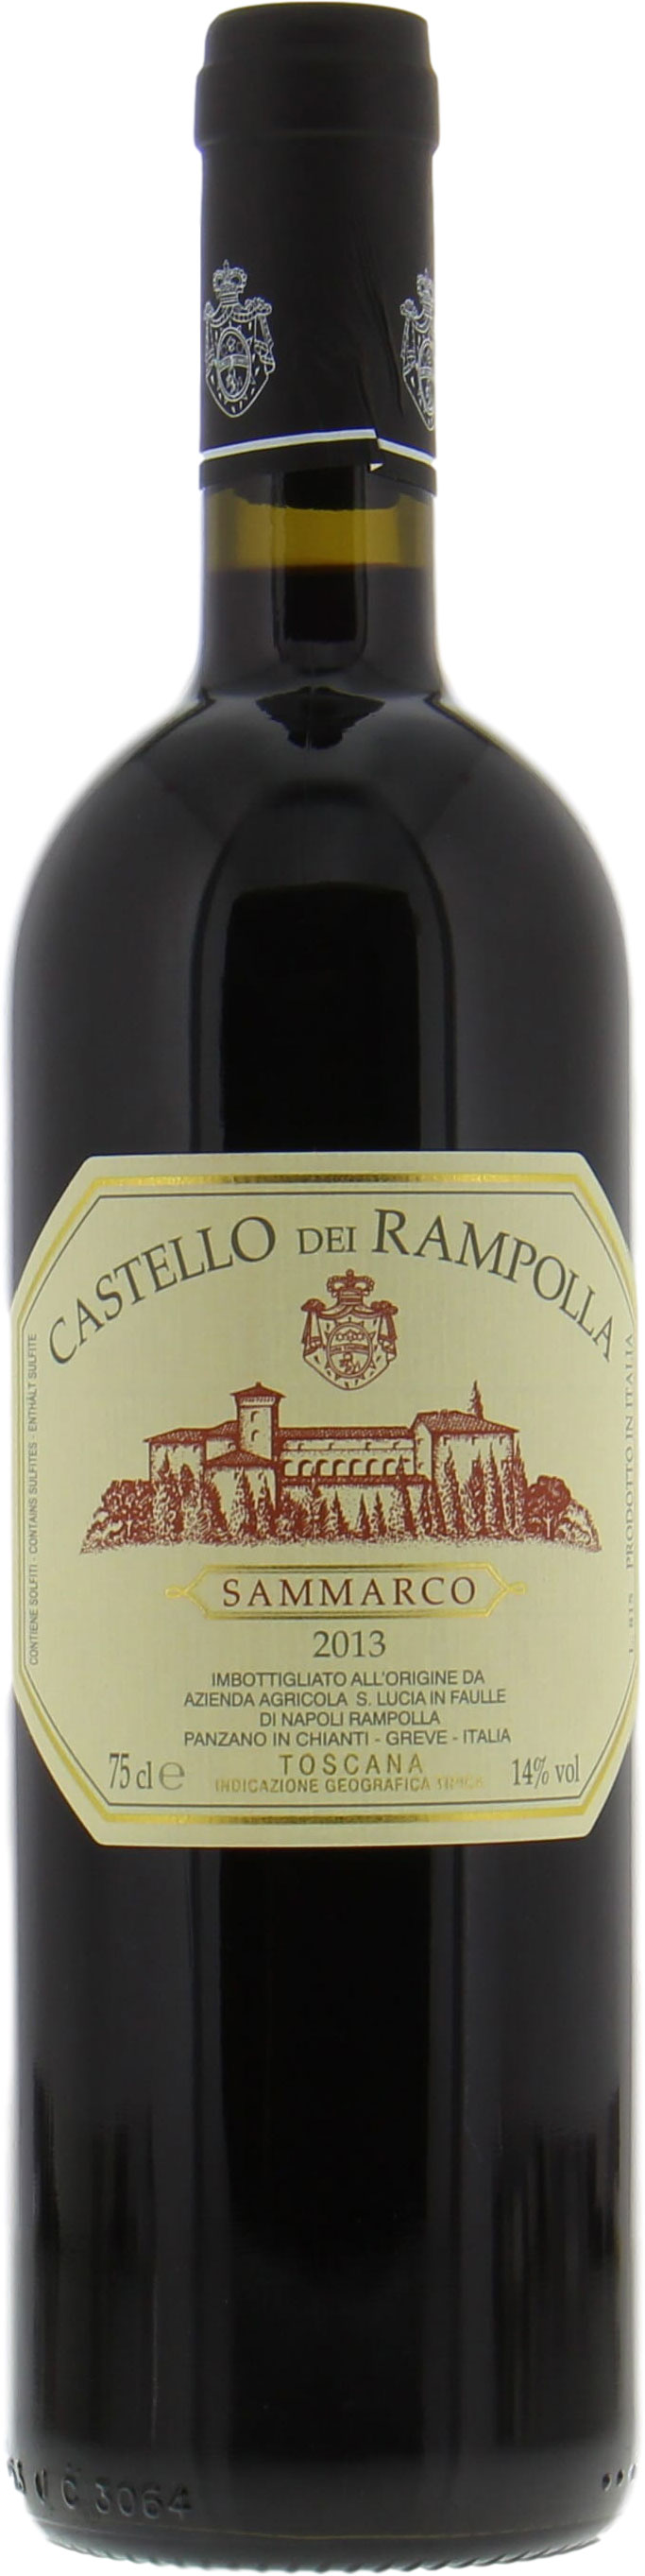 Castello dei Rampolla - Sammarco 2013 Perfect